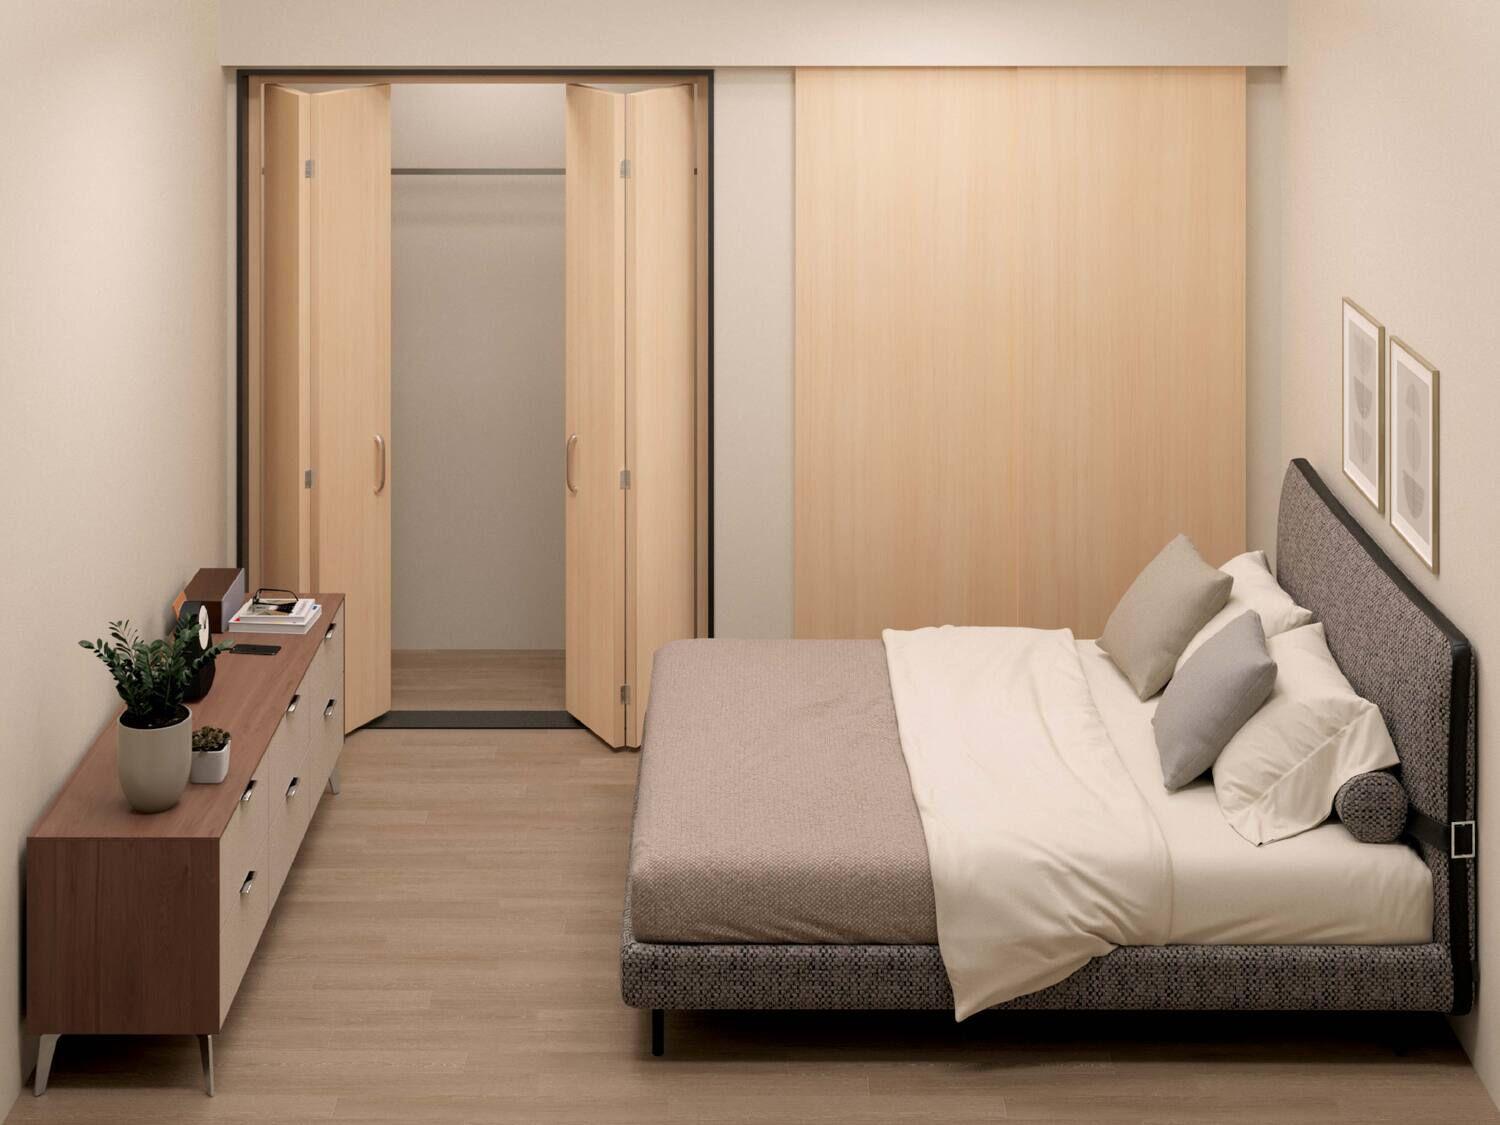 クイーンサイズのベッドを配置した6畳の寝室の全体図